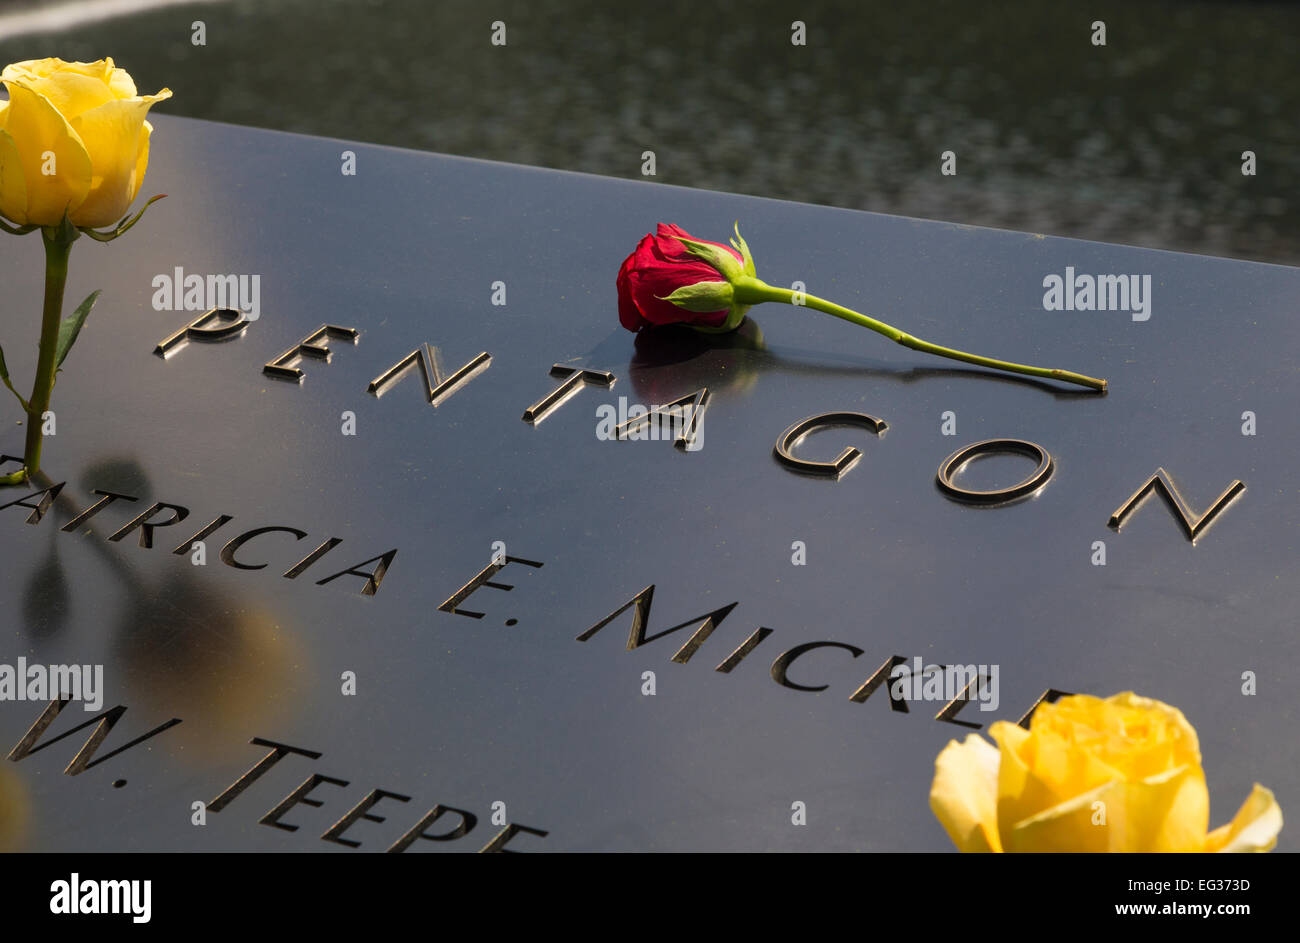 National Memorial del 11 de septiembre al World Trade Center Ground Zero, Nueva York Foto de stock